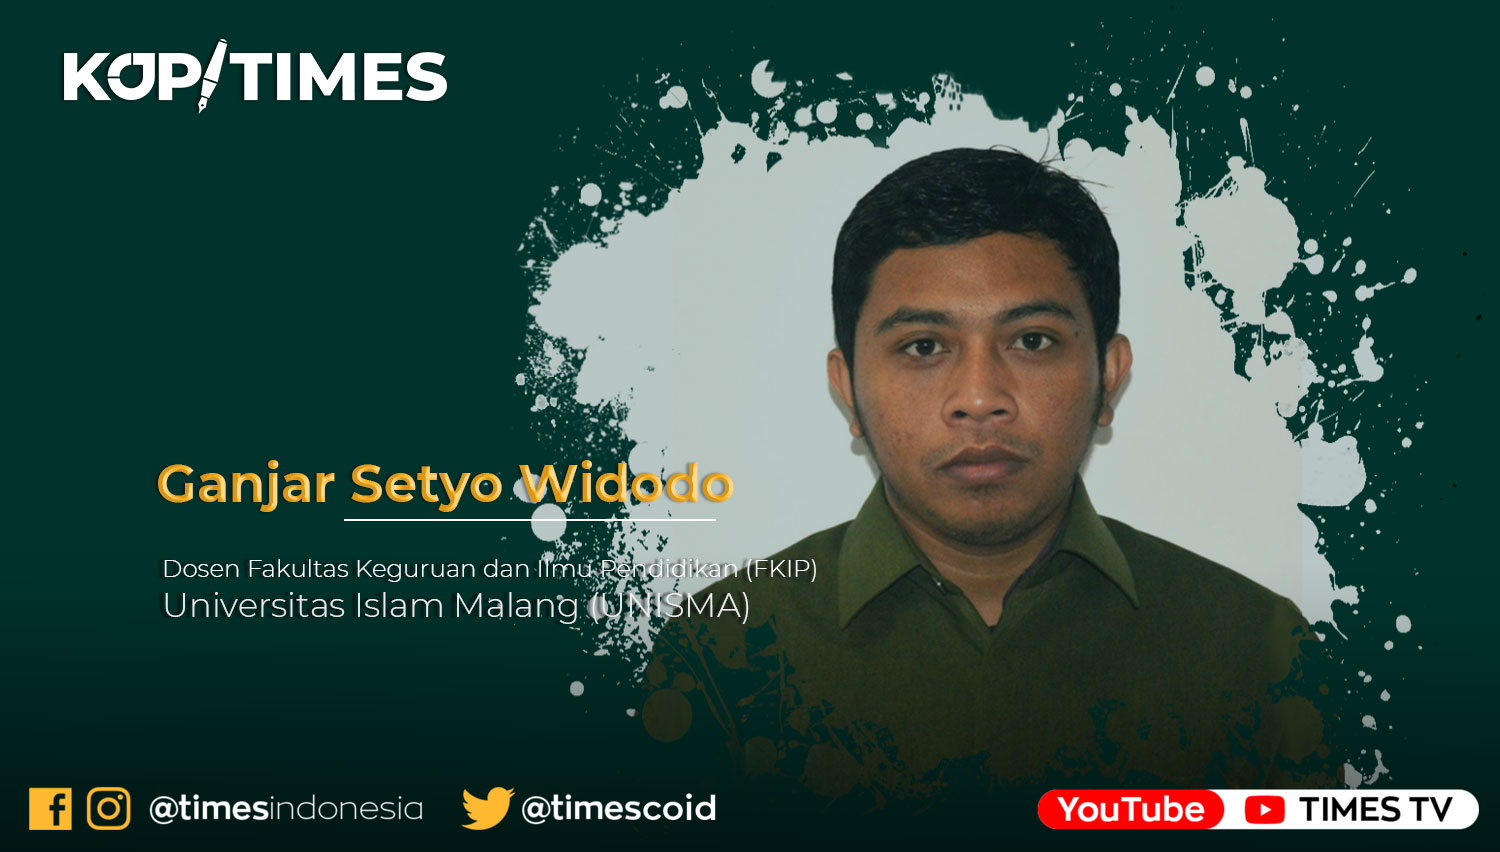 Ganjar Setyo Widodo, Dosen Fakultas Keguruan dan Ilmu Pendidikan (FKIP) Universitas Islam Malang (UNISMA)